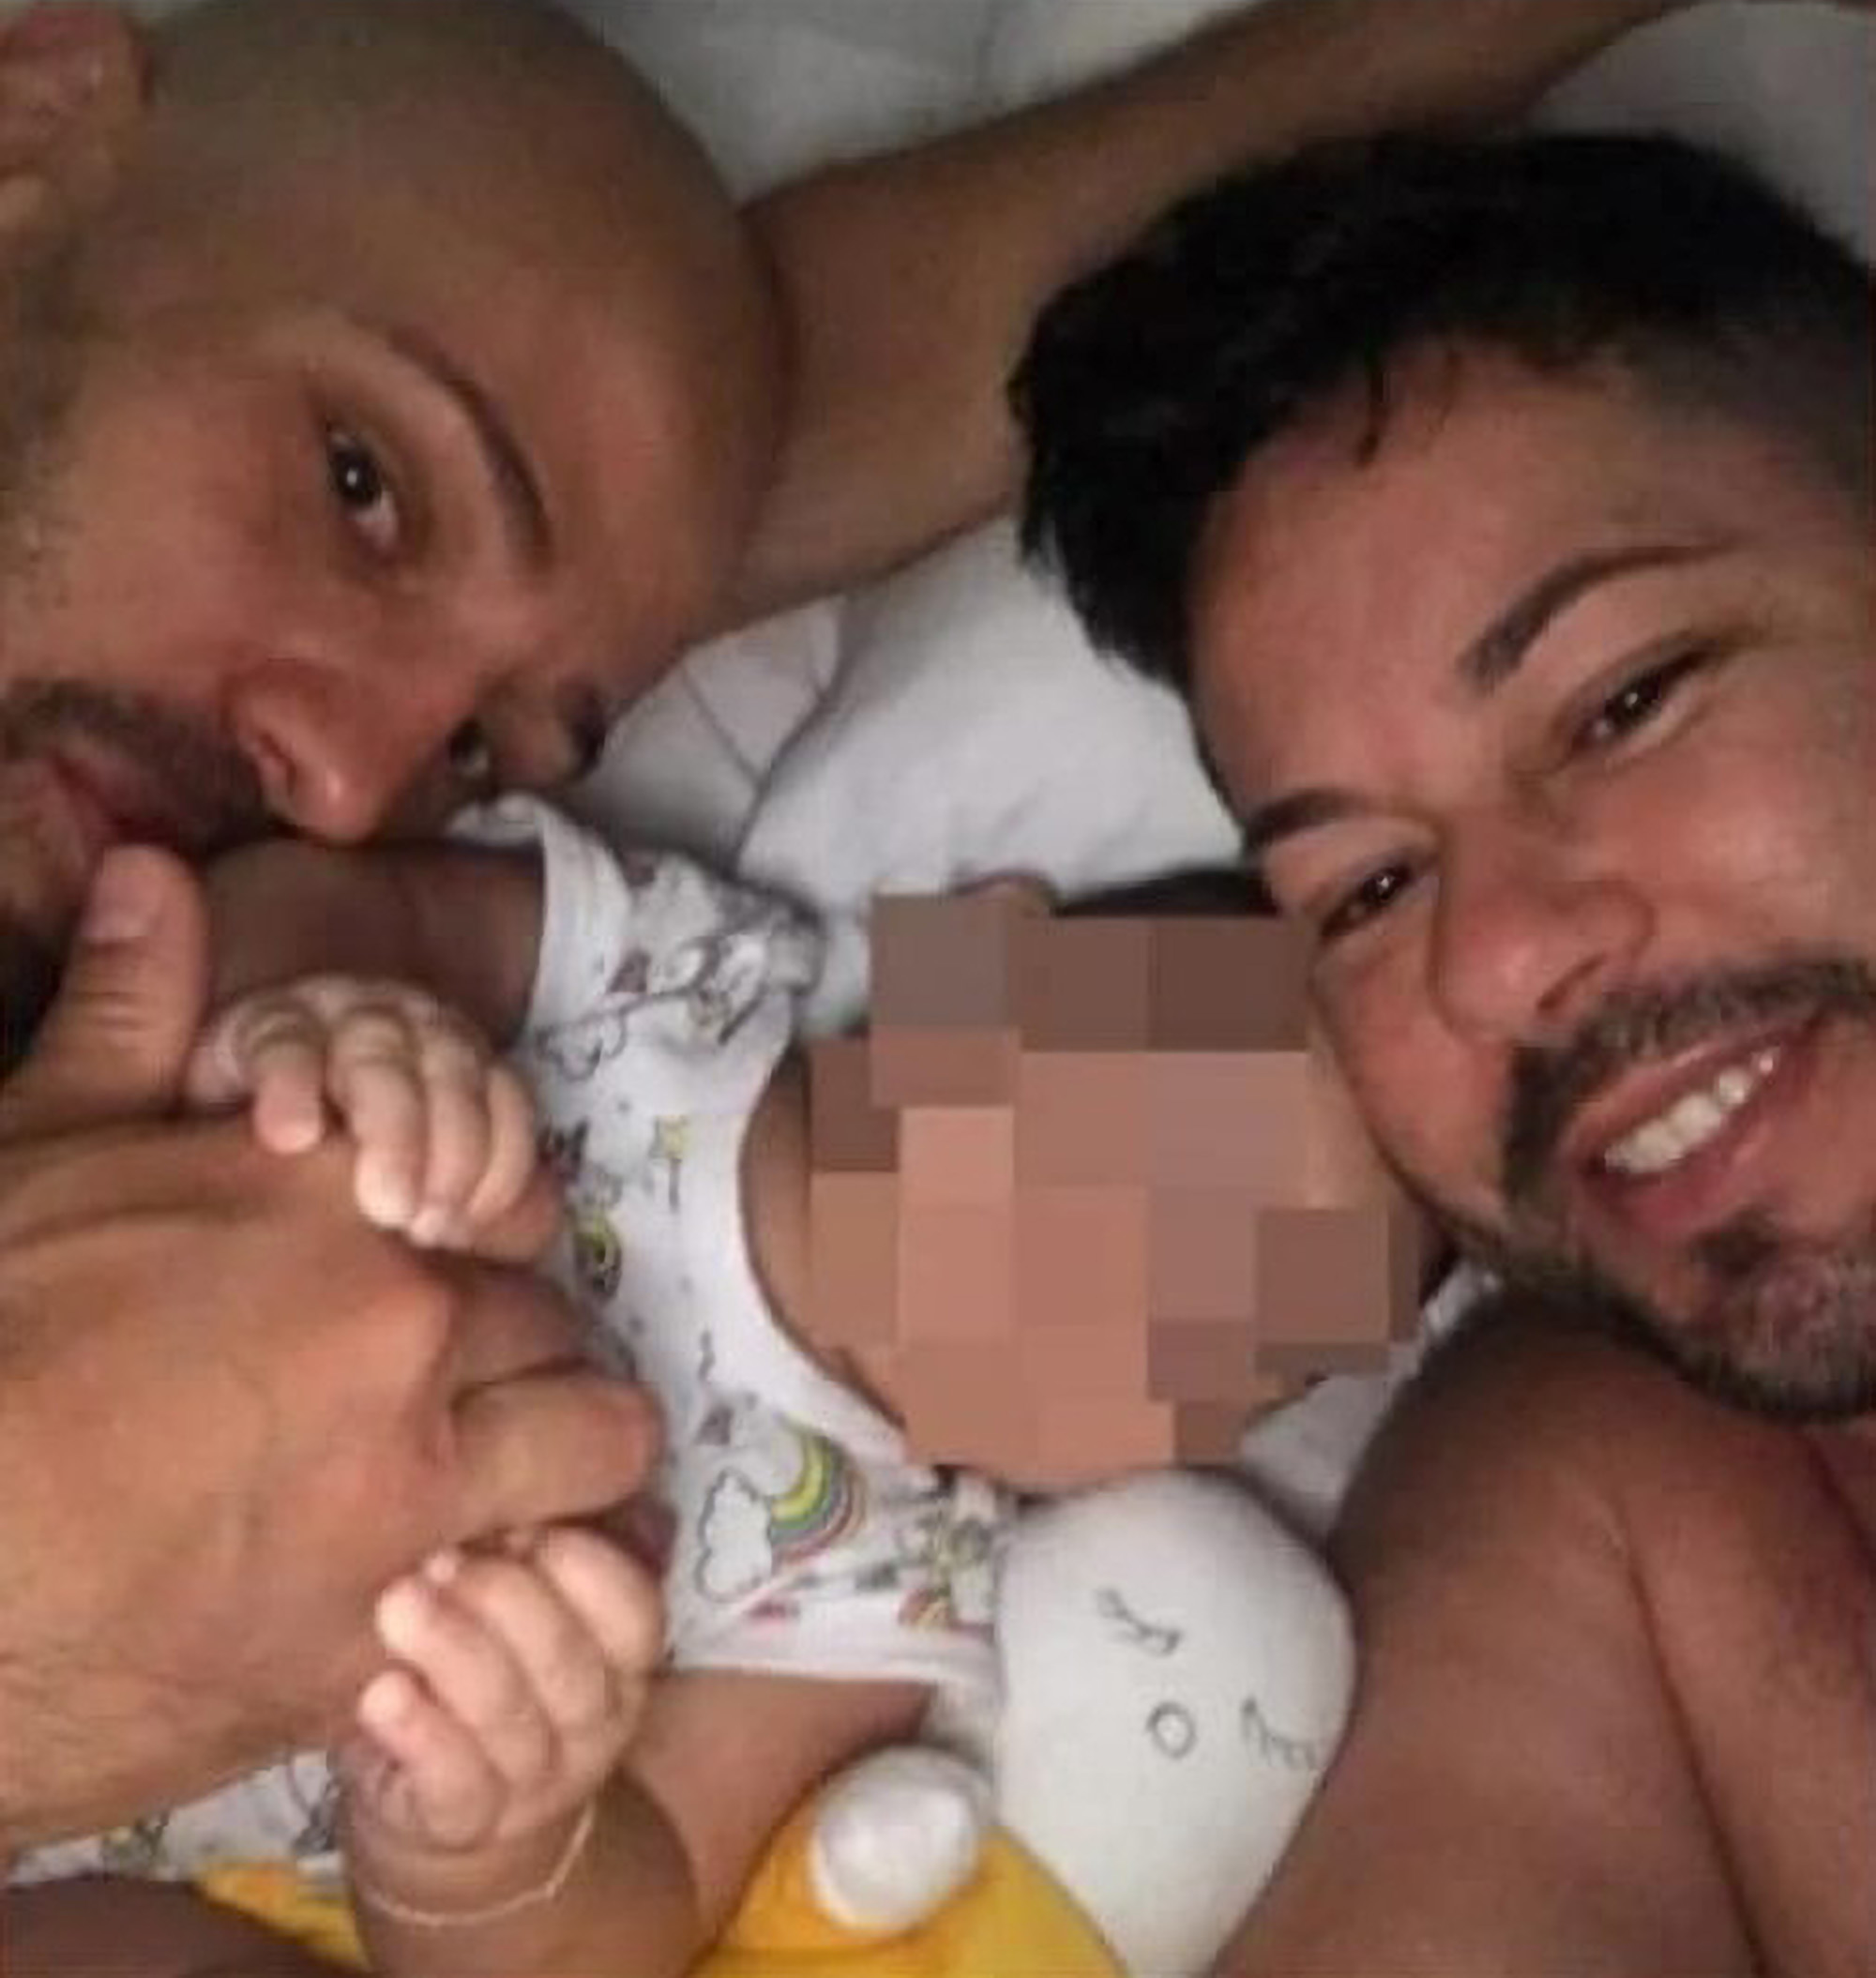 Una pareja gay brasileña obligada a devolver a su bebé